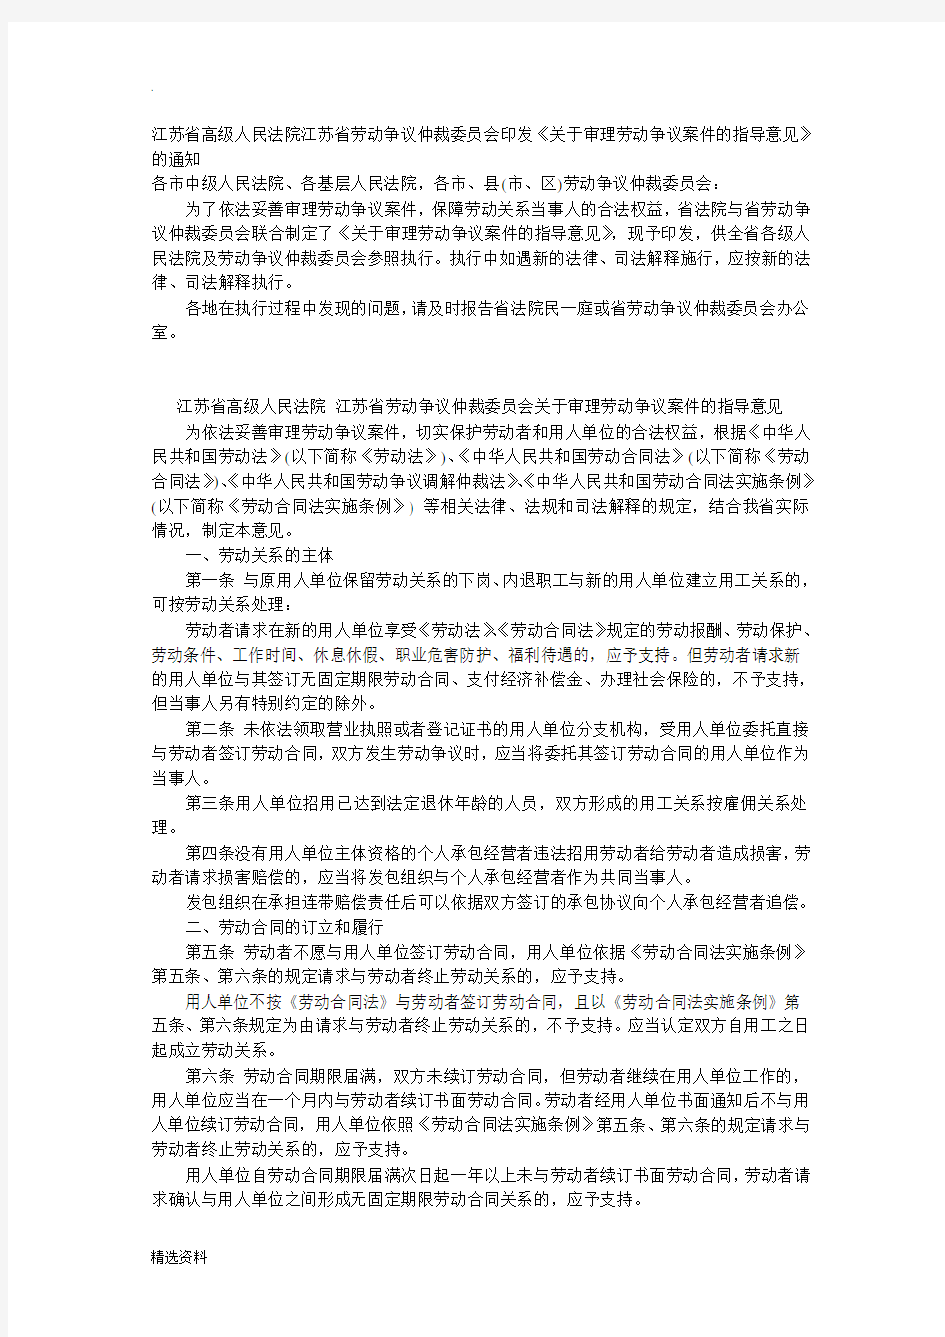 江苏省高级人民法院江苏省劳动争议仲裁委员会印发《关于审理劳动争议案件的指导意见》的通知